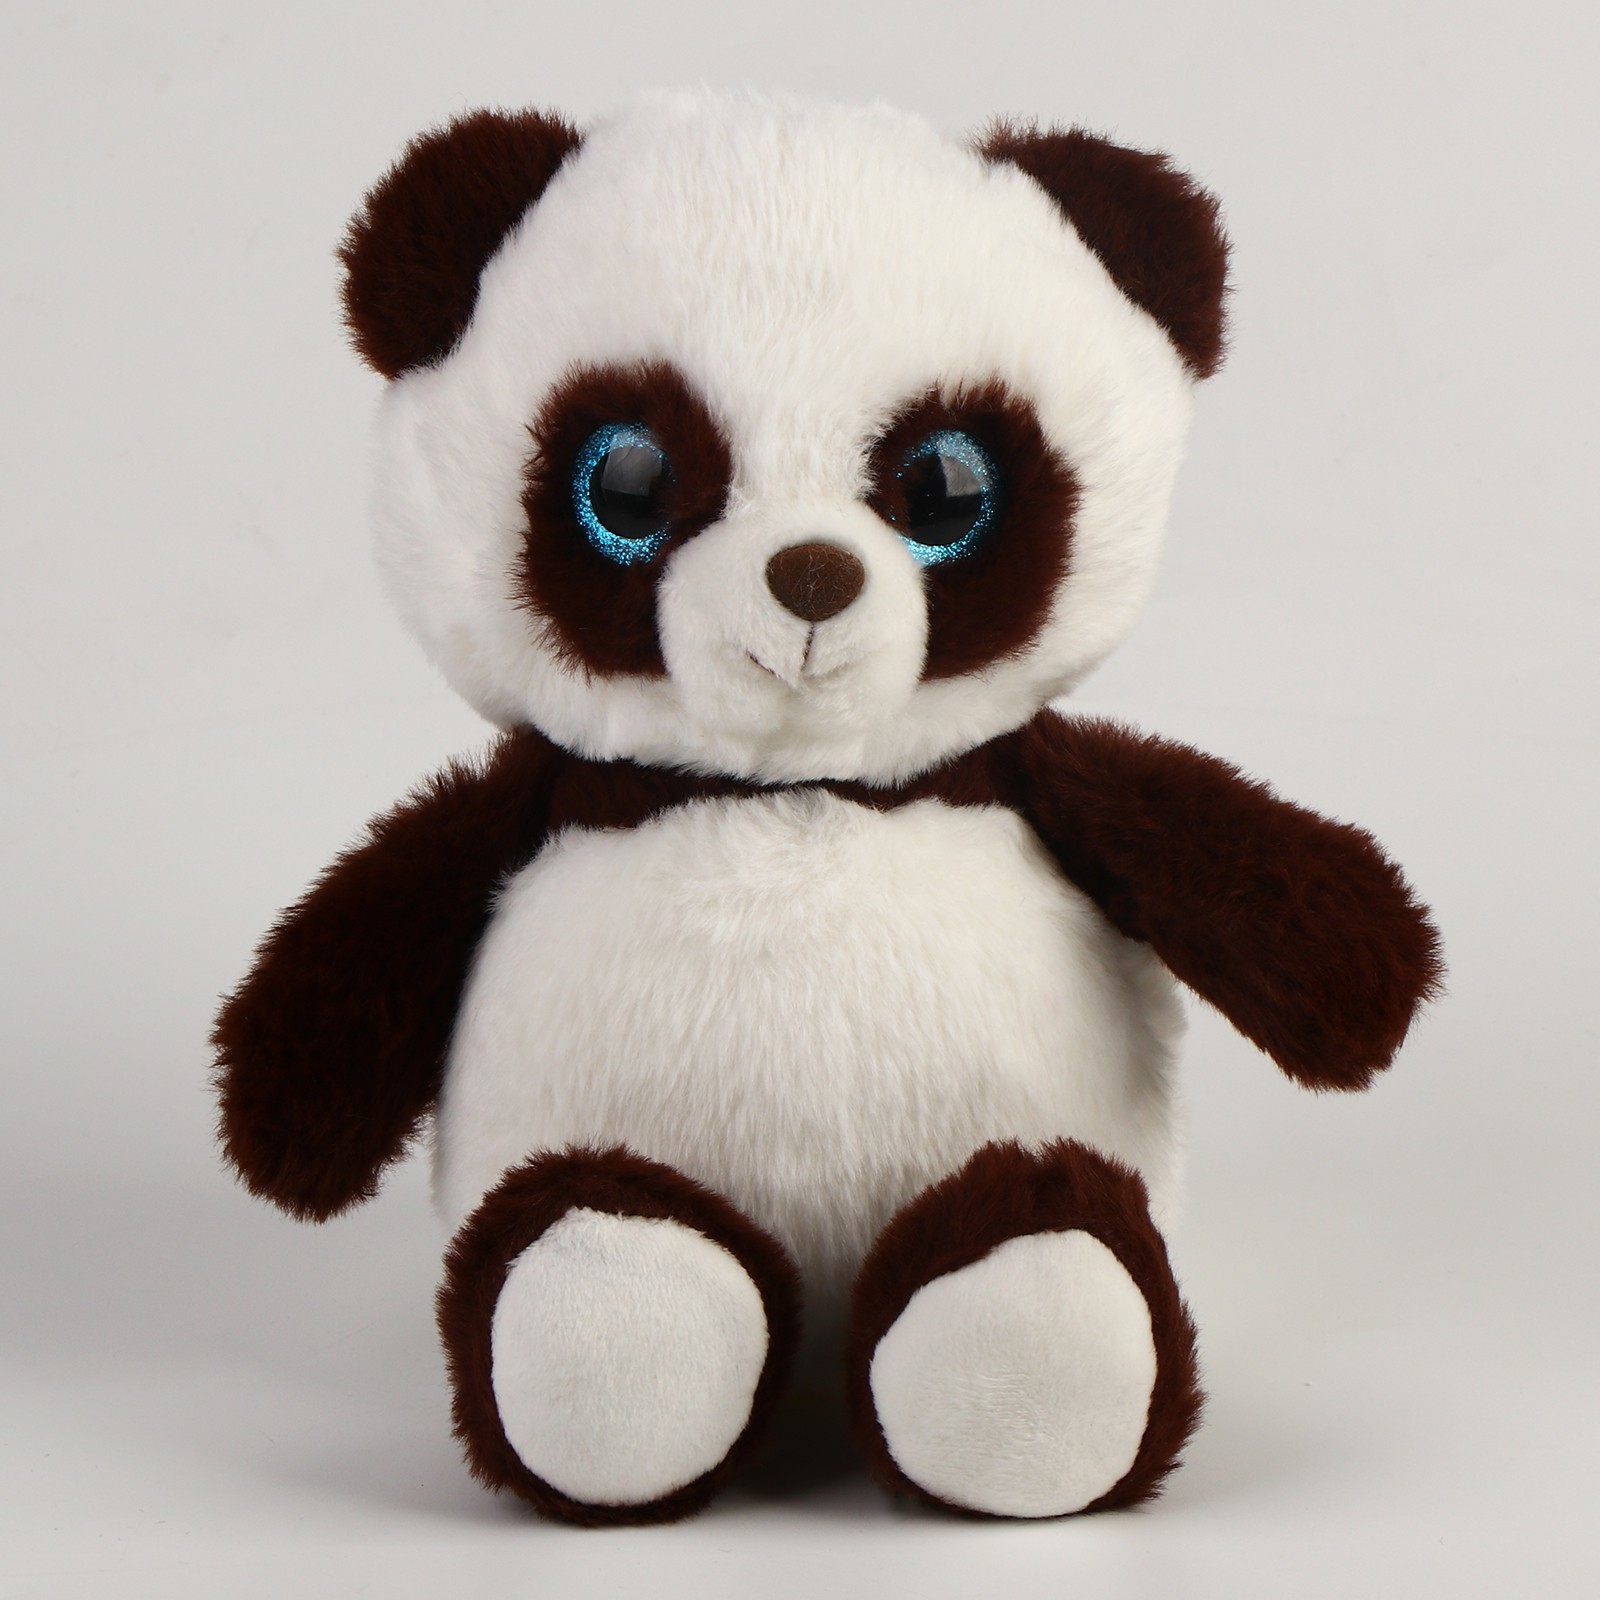 Мягкая игрушка Панда, 9689557, высота 22 см Белый, Коричневый